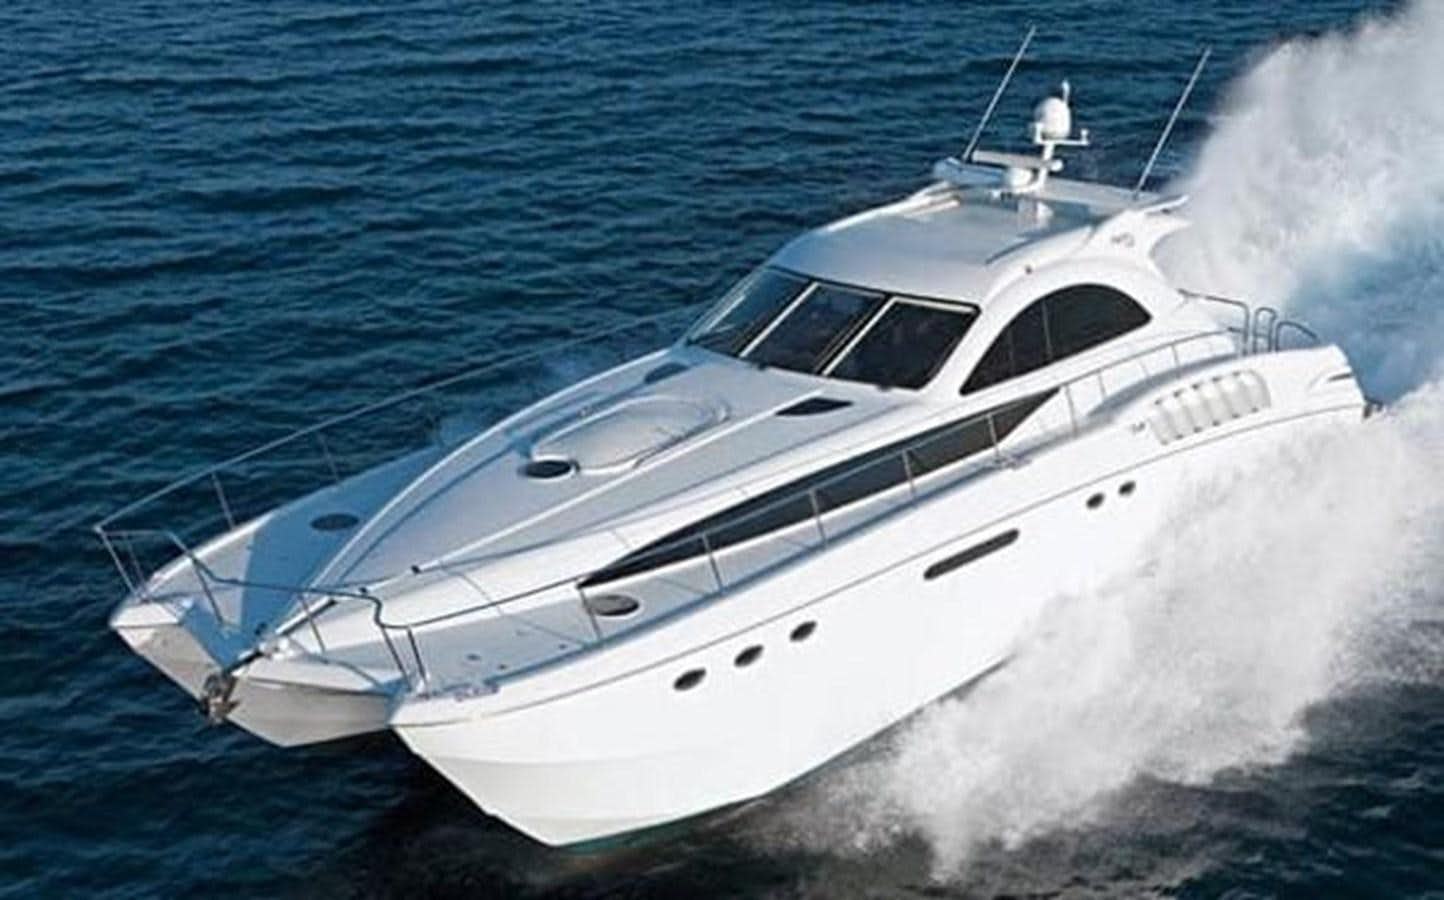 2010 custom axcell 650 power catamaran
Yacht for Sale